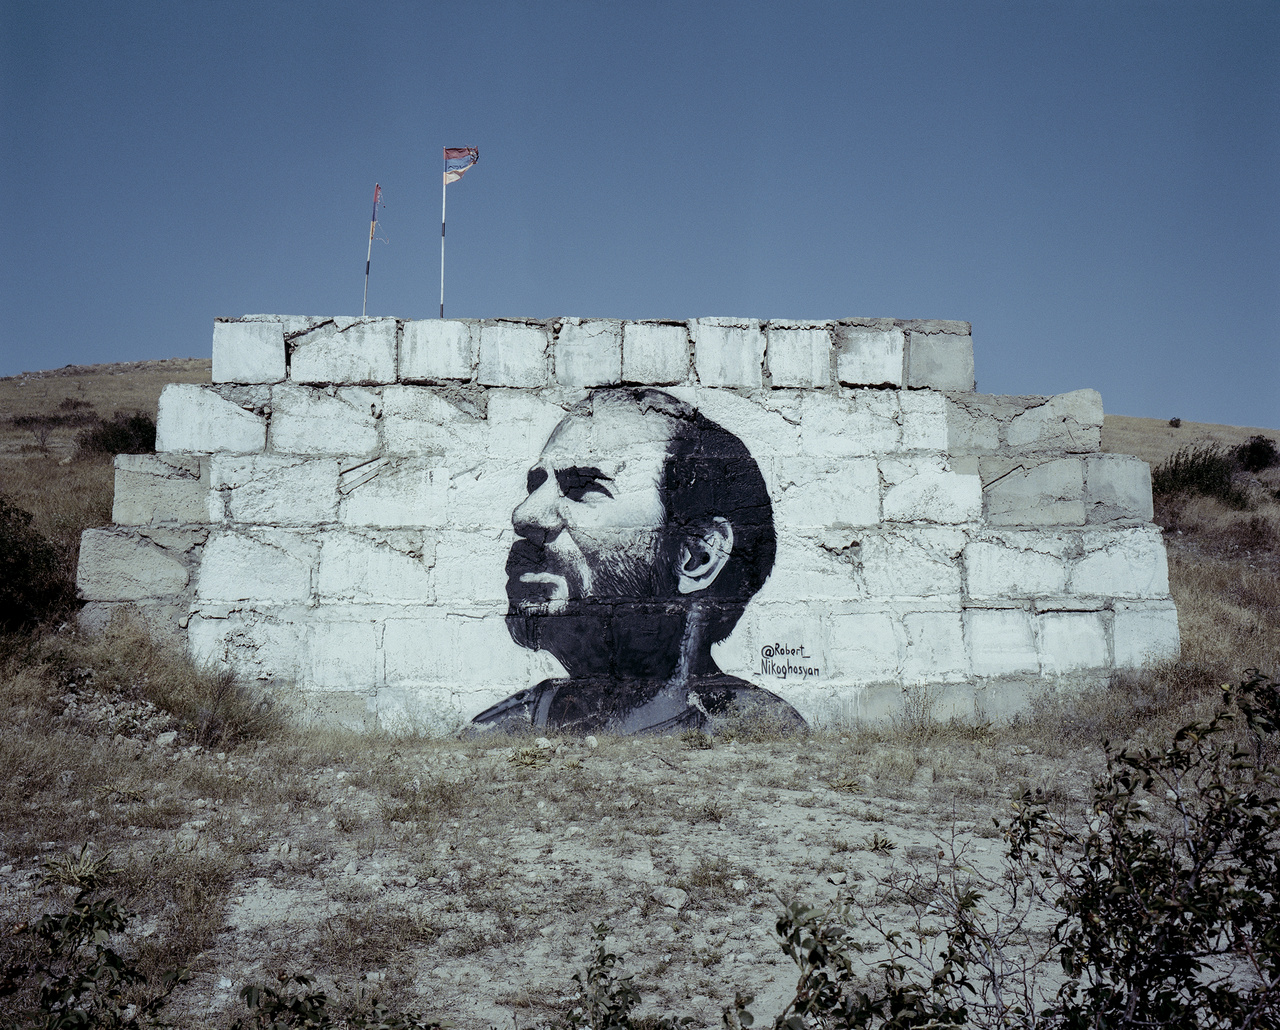 Monte Melkonyan, karabahi hadvezér arcképe. Robert Nikoghosyan – Festő- és graffiti művész alkotása. Robert számos halott fiatal katona portréját festi emlékként házak, kultúrházak és iskolák falaira. „Nagyon fájdalmas téma, amelyre, ha lett volna választási lehetőségem, nem tértem volna ki, de sajnos olyan országban élek, ahol ennek van aktualitása. Munkámnak időleges természete van, mégis ezek a képek megmaradnak emlékként a falakon. A fájdalom egy szép napon megenyhül, nem múlik el, de idővel megpuhul.